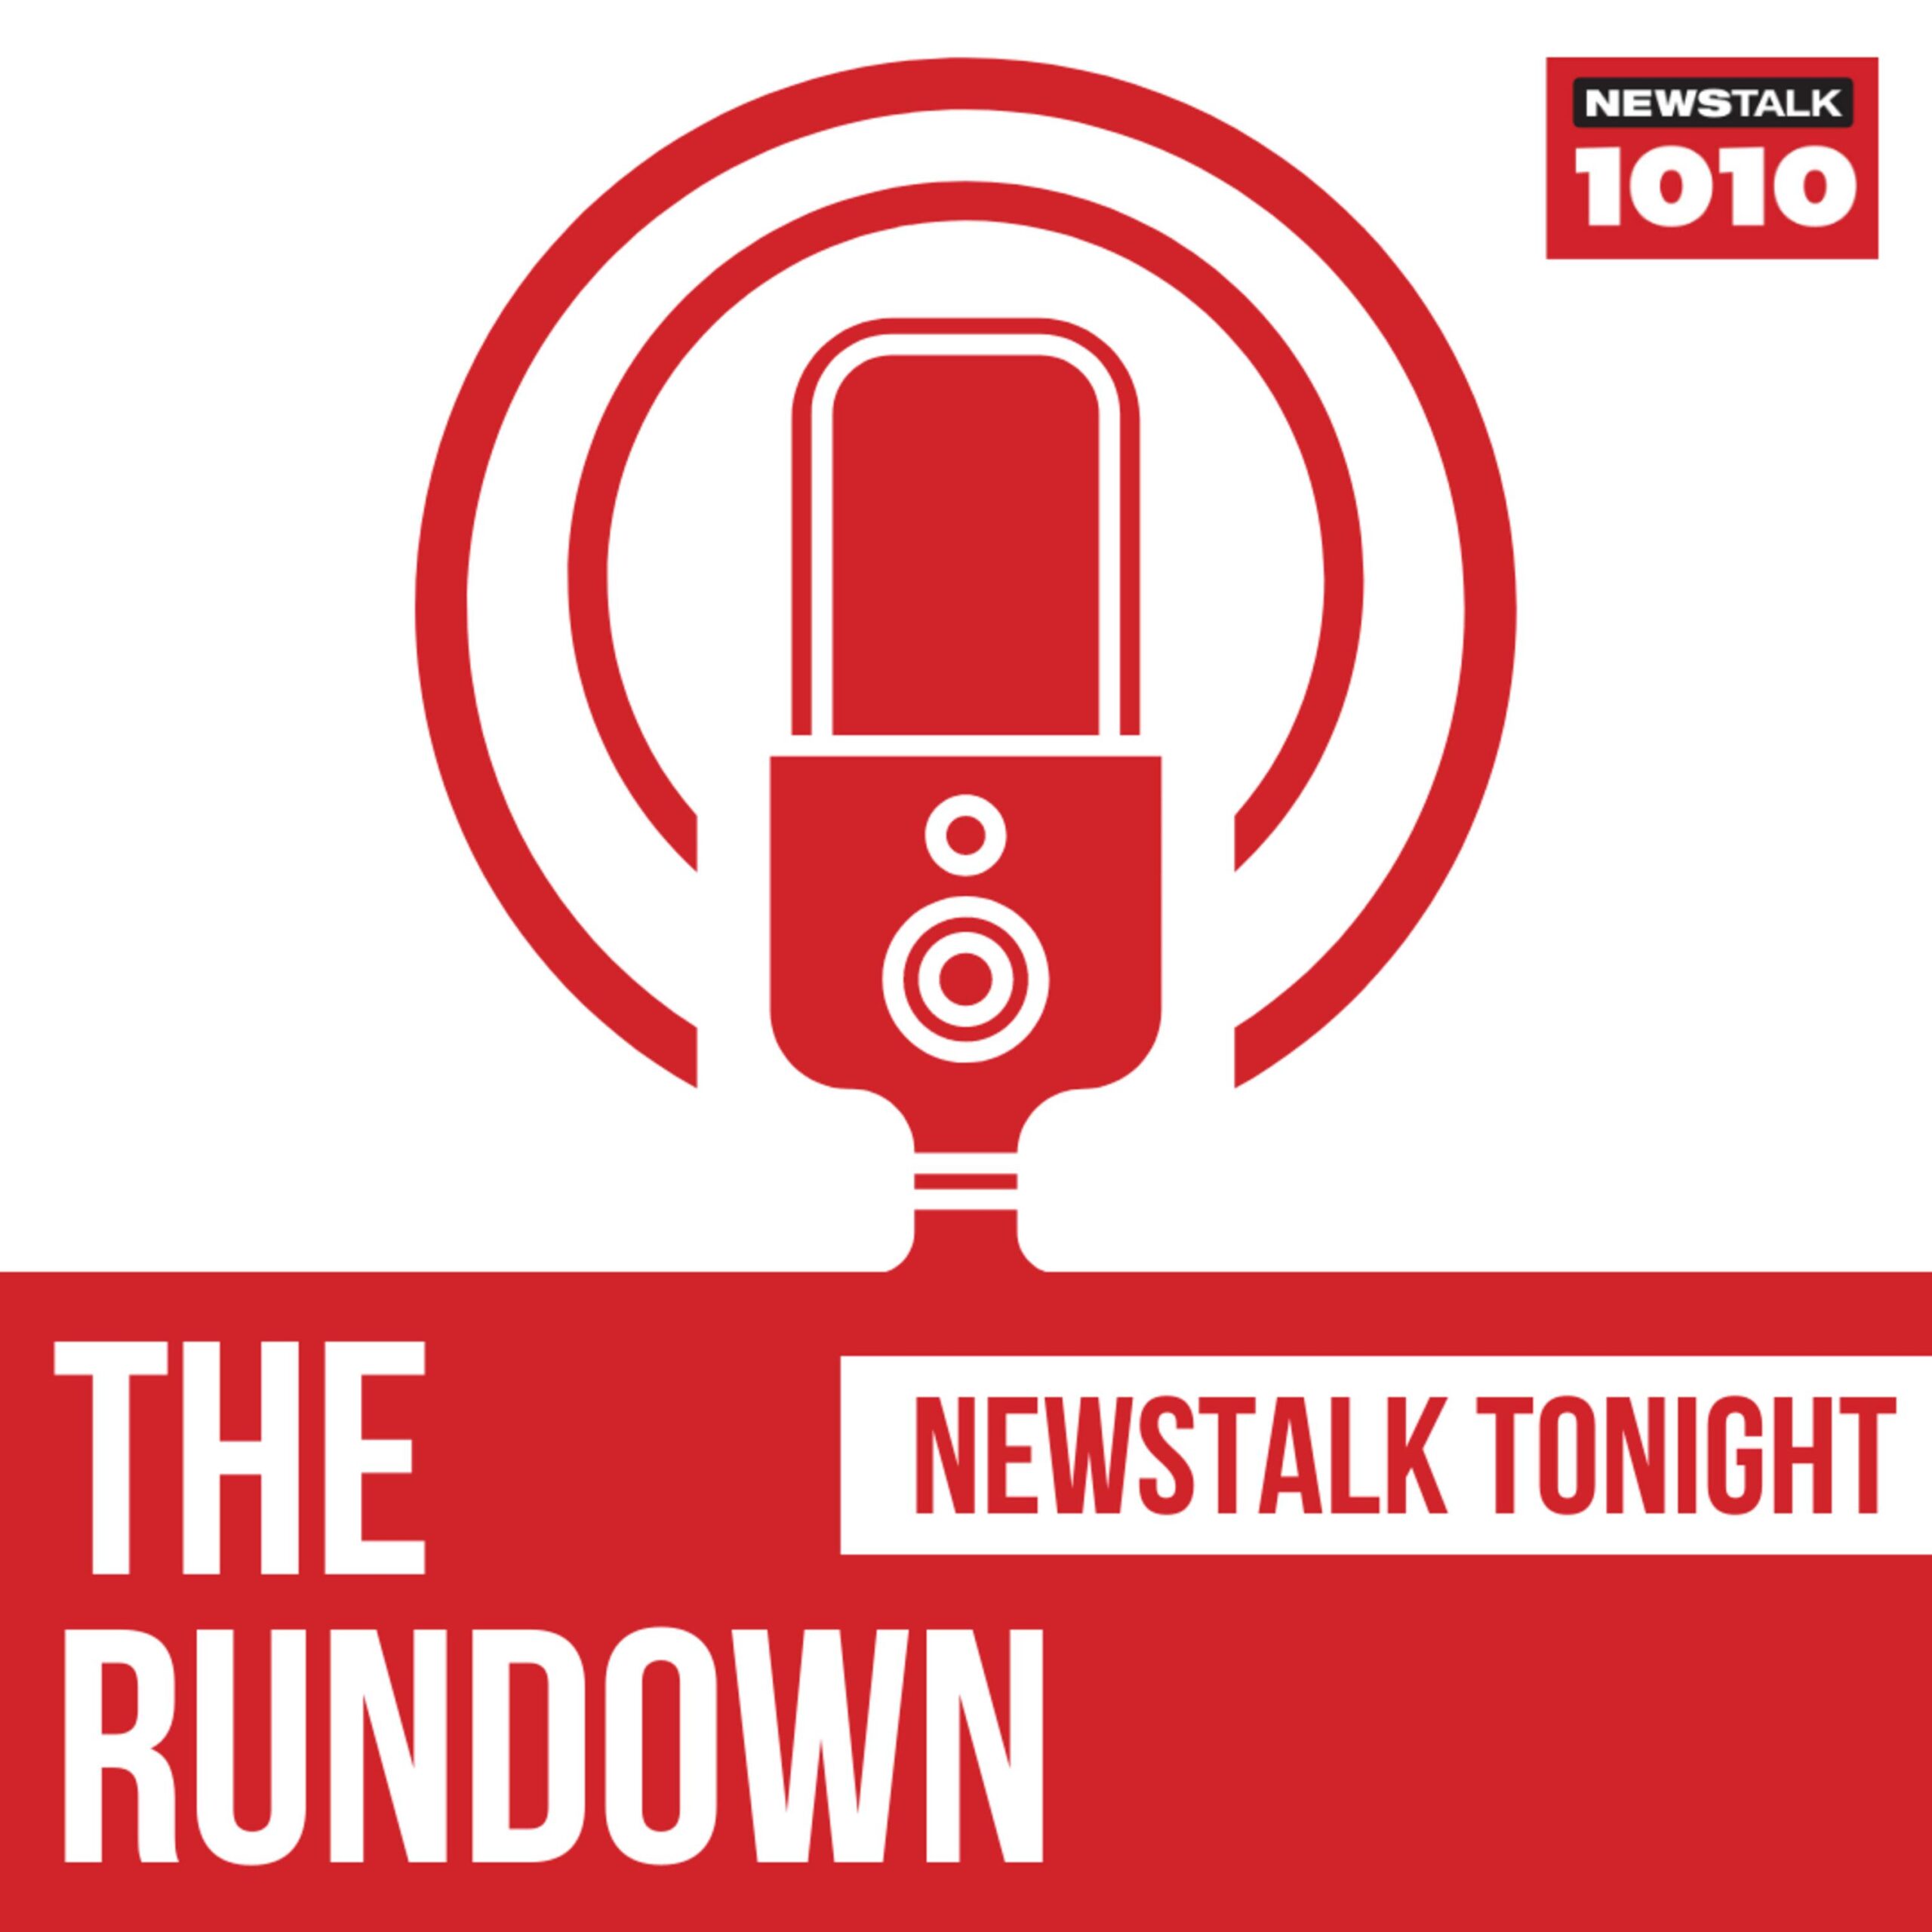 Newstalk 1010: Jim Richards’ The Rundown with Jon Liedtke and Kalvin Reid